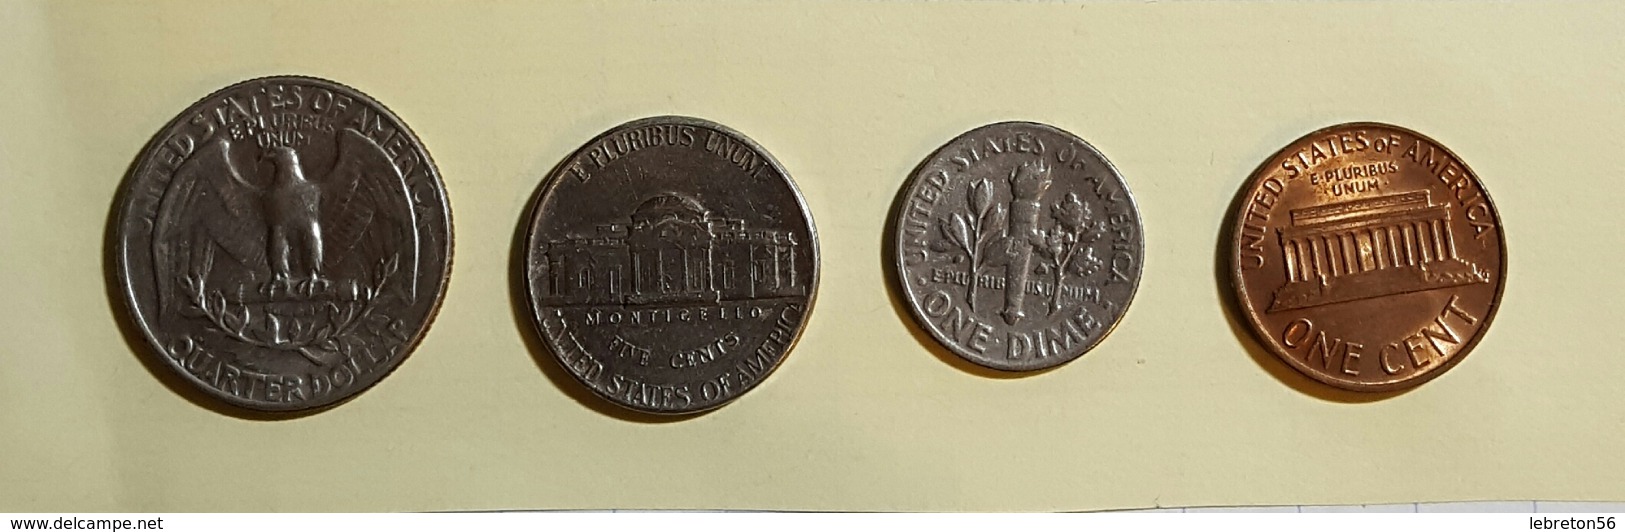 Etats Unis Quater Dollards 1967 Five Cent 1972 One Dime 1966 On Cent1976 Voir Les Deux Photos - Kiloware - Münzen